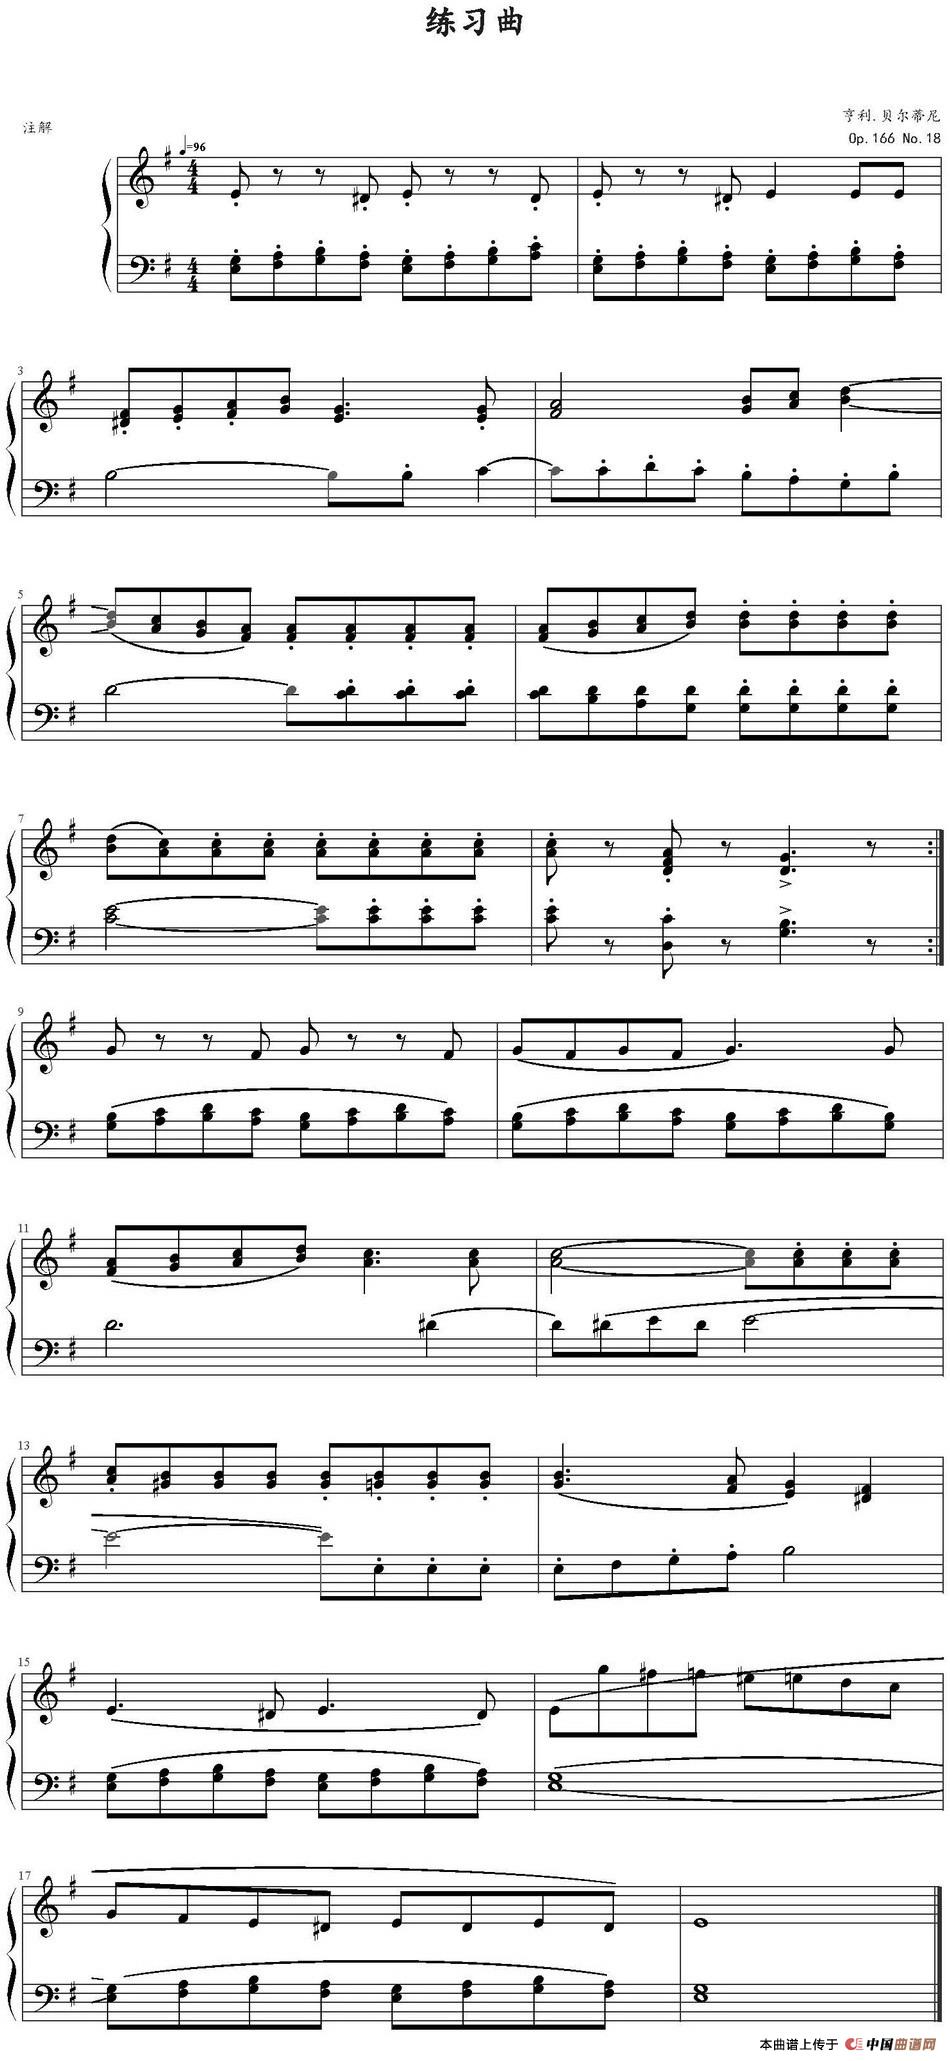 亨利·贝尔蒂尼练习曲Op.166，No.18